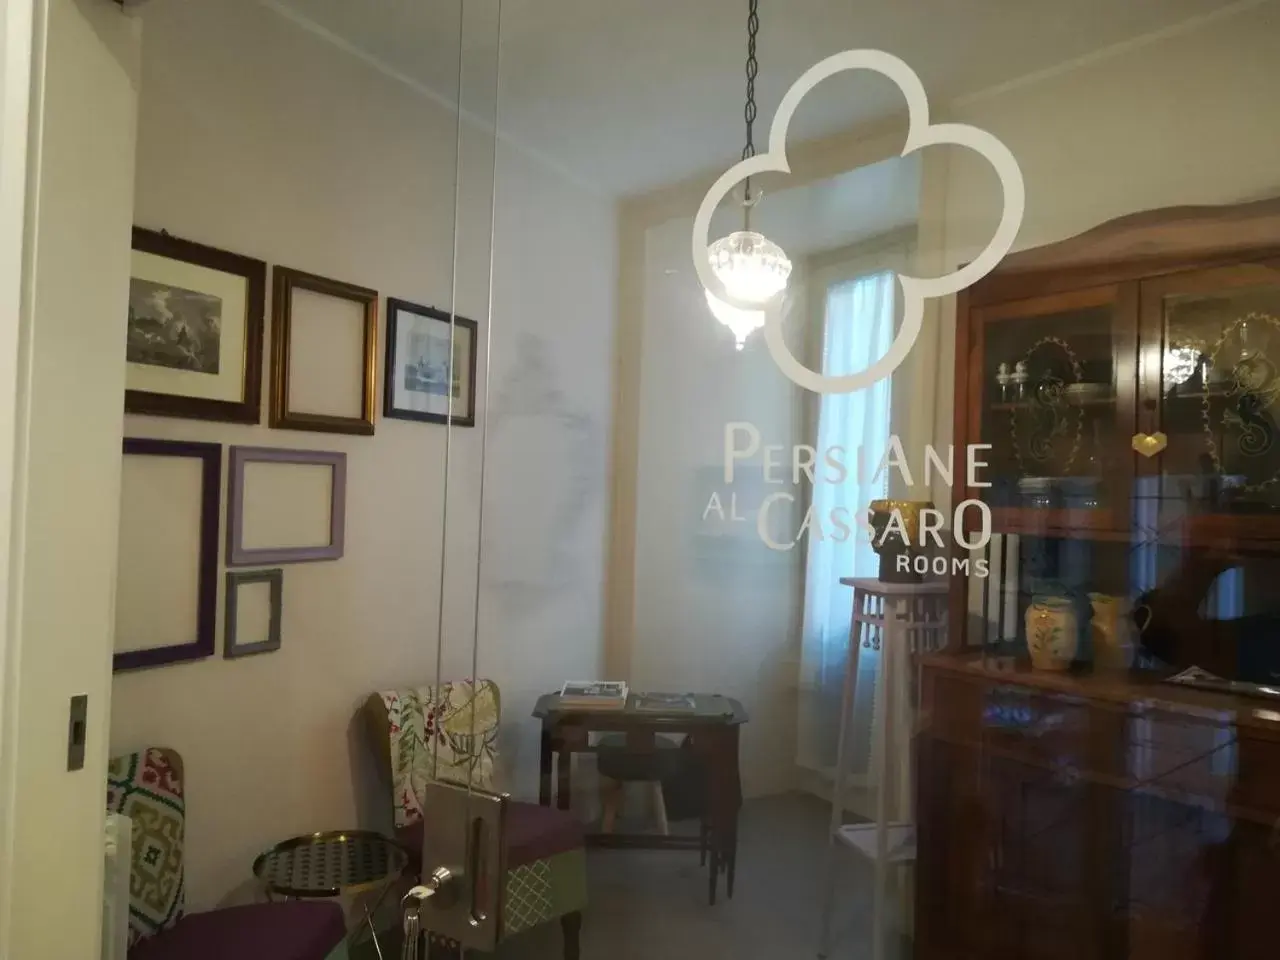 Living room in Persiane al Cassaro